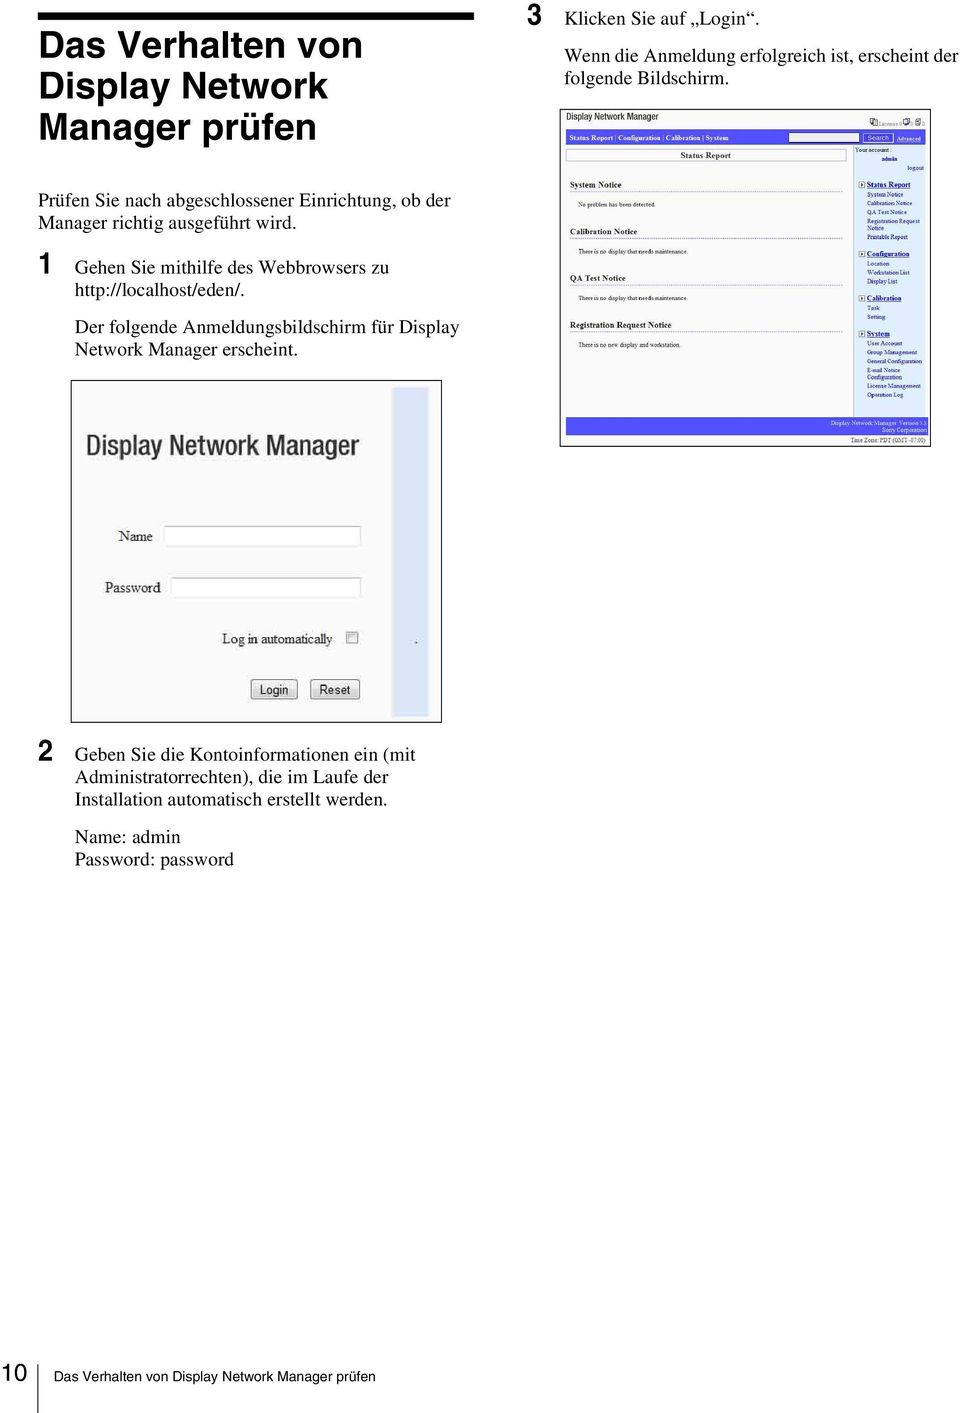 1 Gehen Sie mithilfe des Webbrowsers zu http://localhost/eden/. Der folgende Anmeldungsbildschirm für Display Network Manager erscheint.